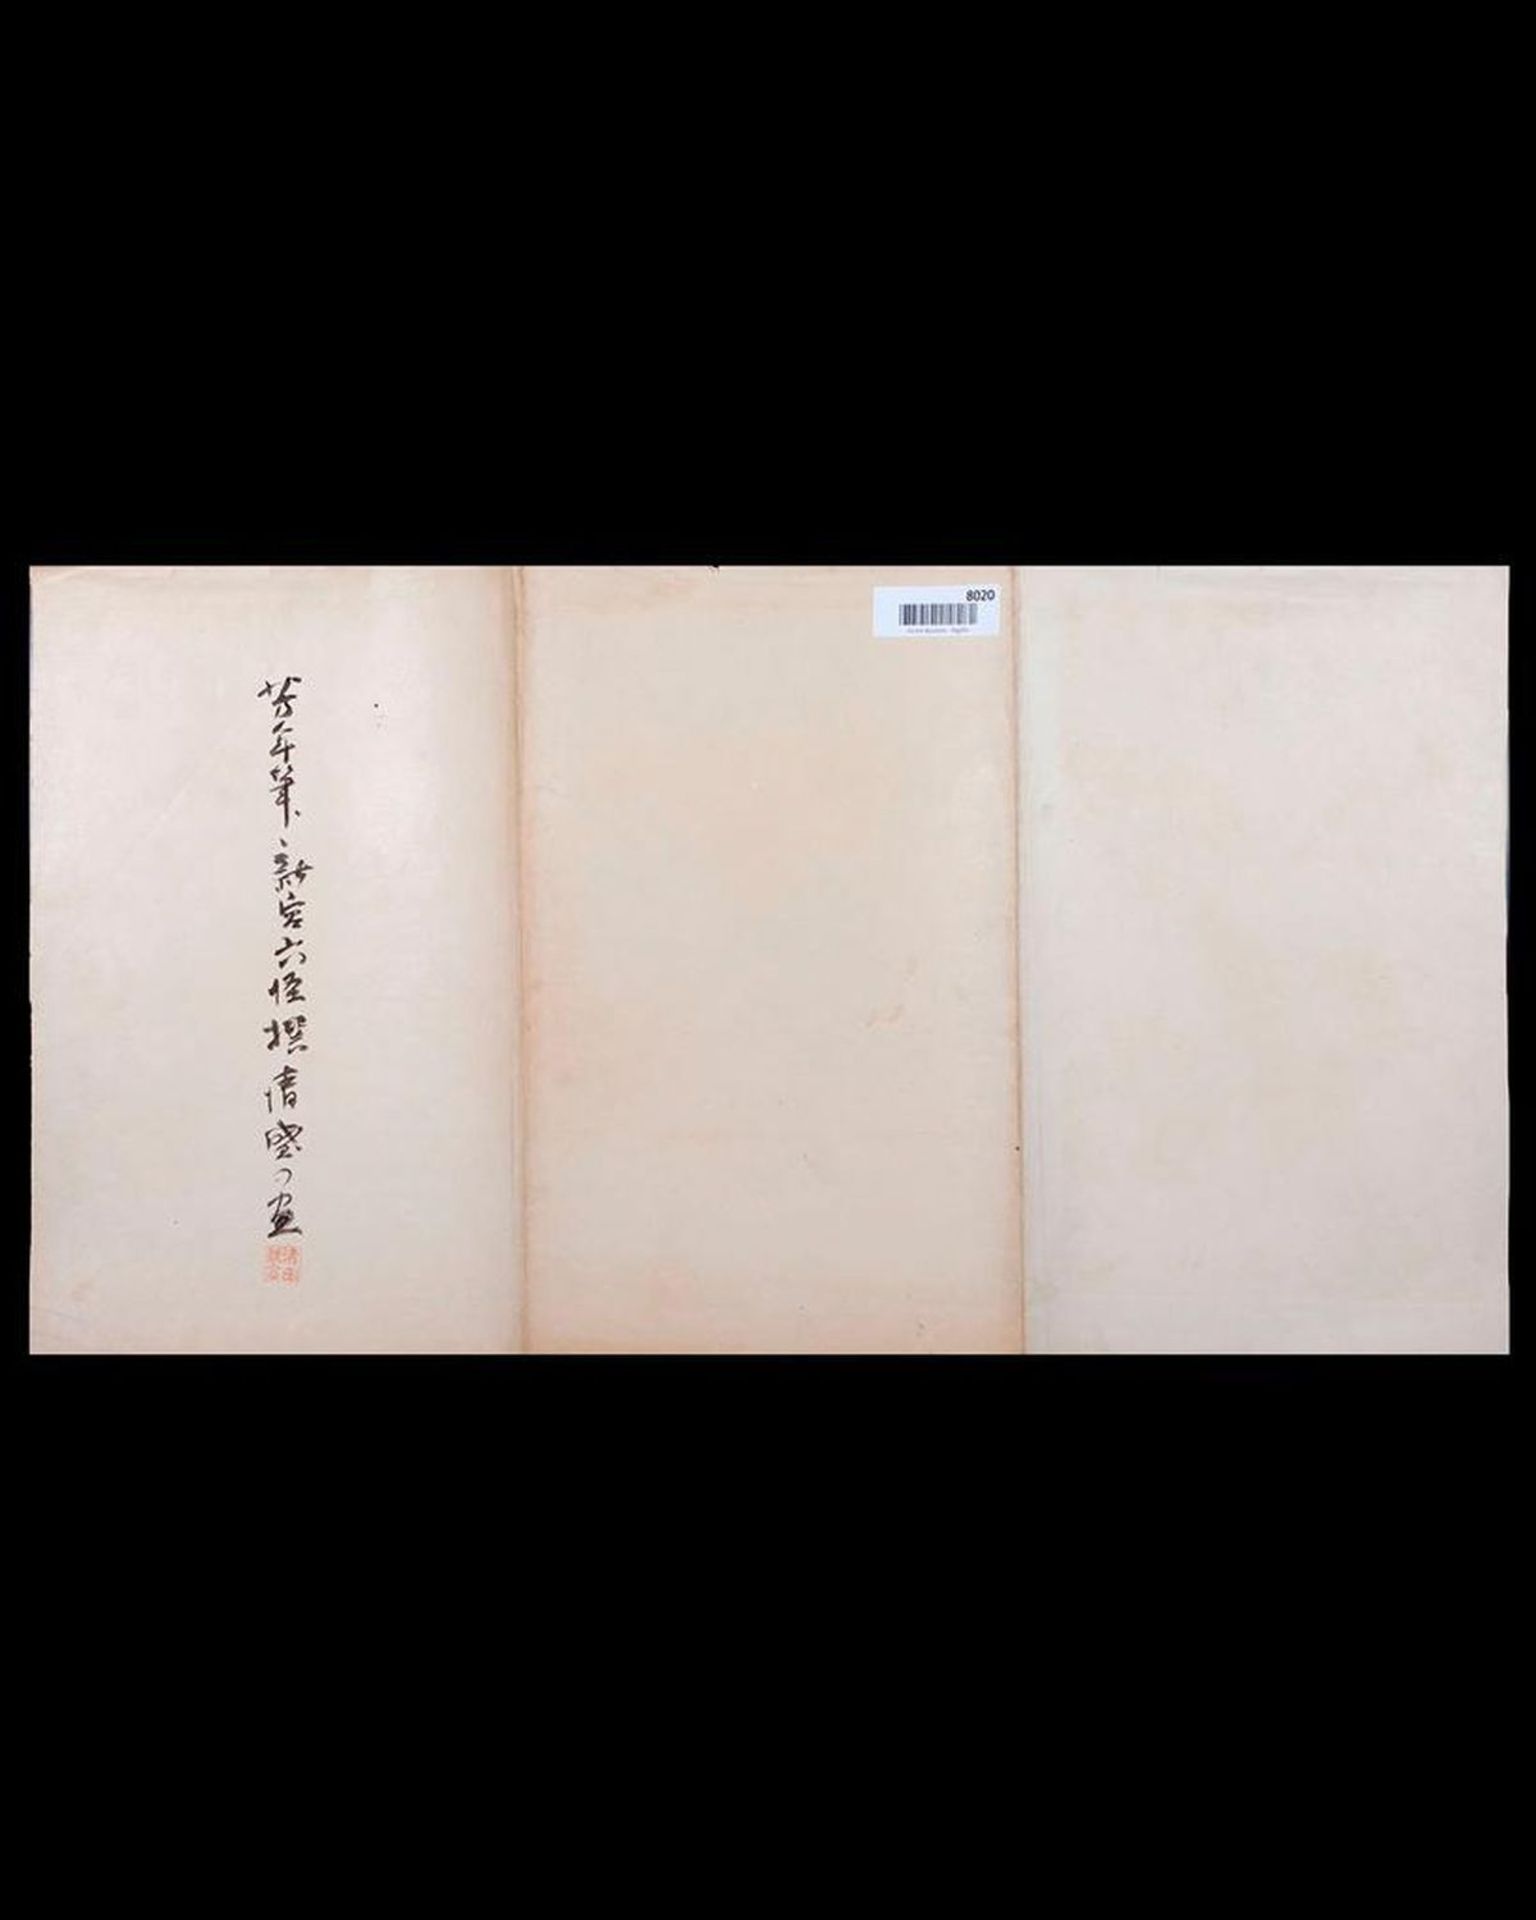 YOSHITOSHI (1839-1892) - Image 2 of 2